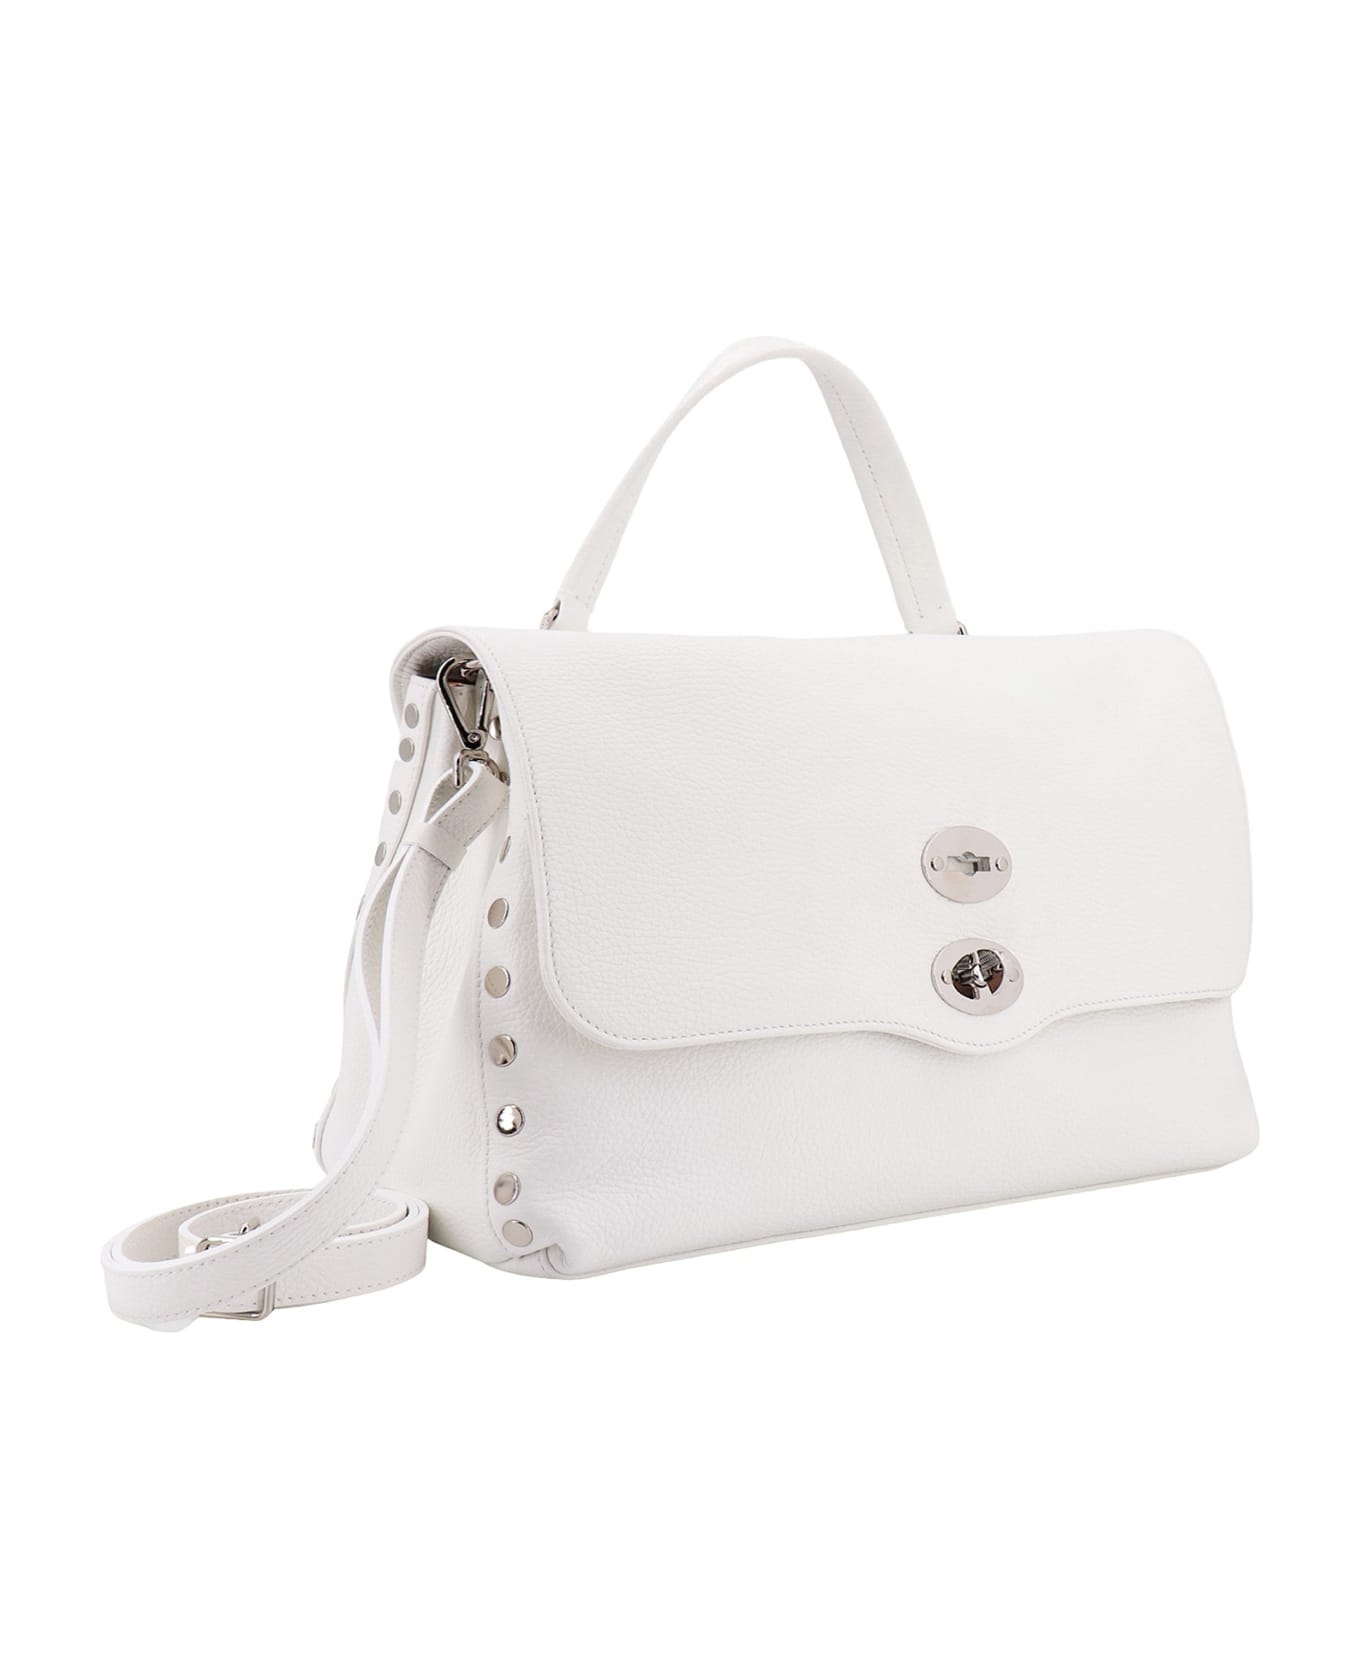 Zanellato Postina Daily M Handbag - White